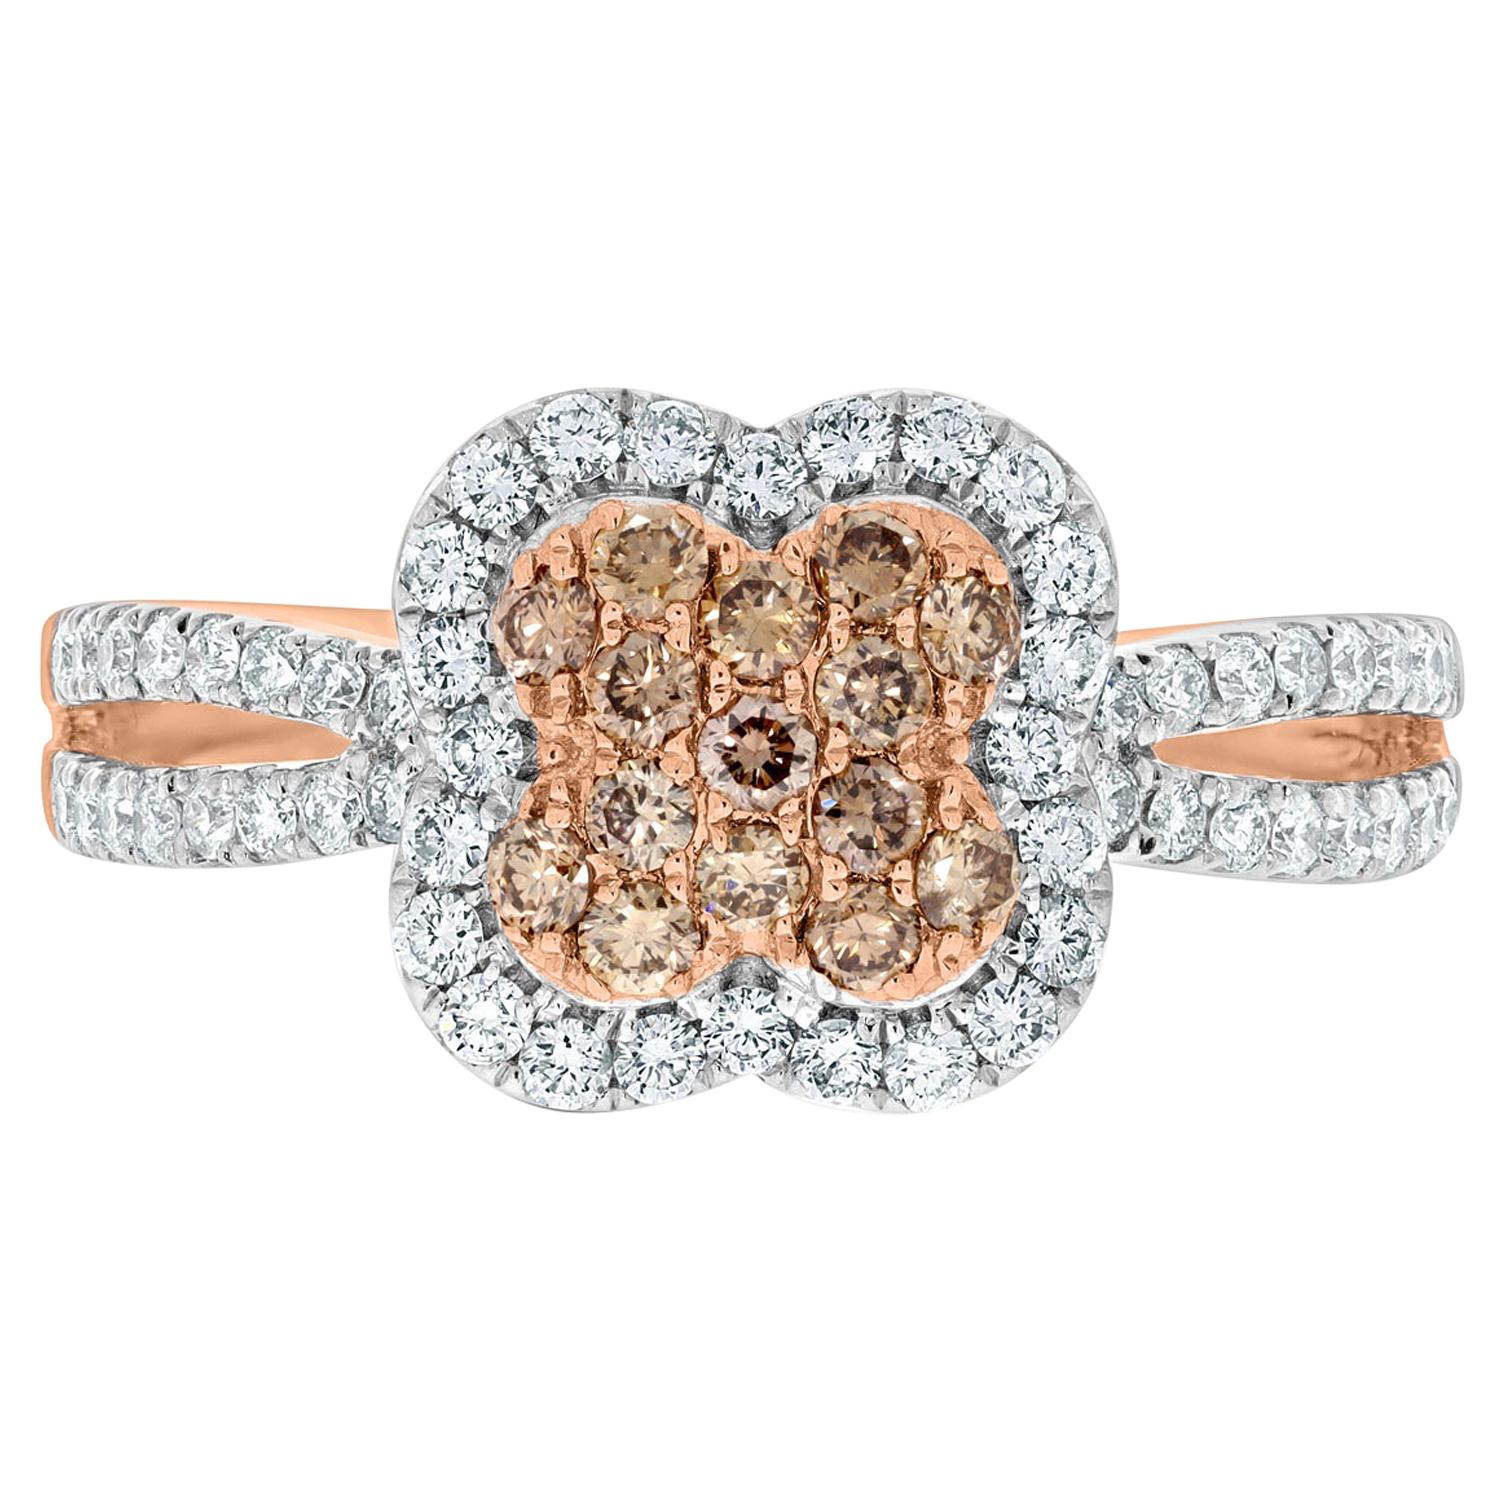 Edelstein Edelstein Bleu 0,28 Karat rosa Diamanten Ring mit 0,43 Karat Diamanten in 14K Gold gefasst